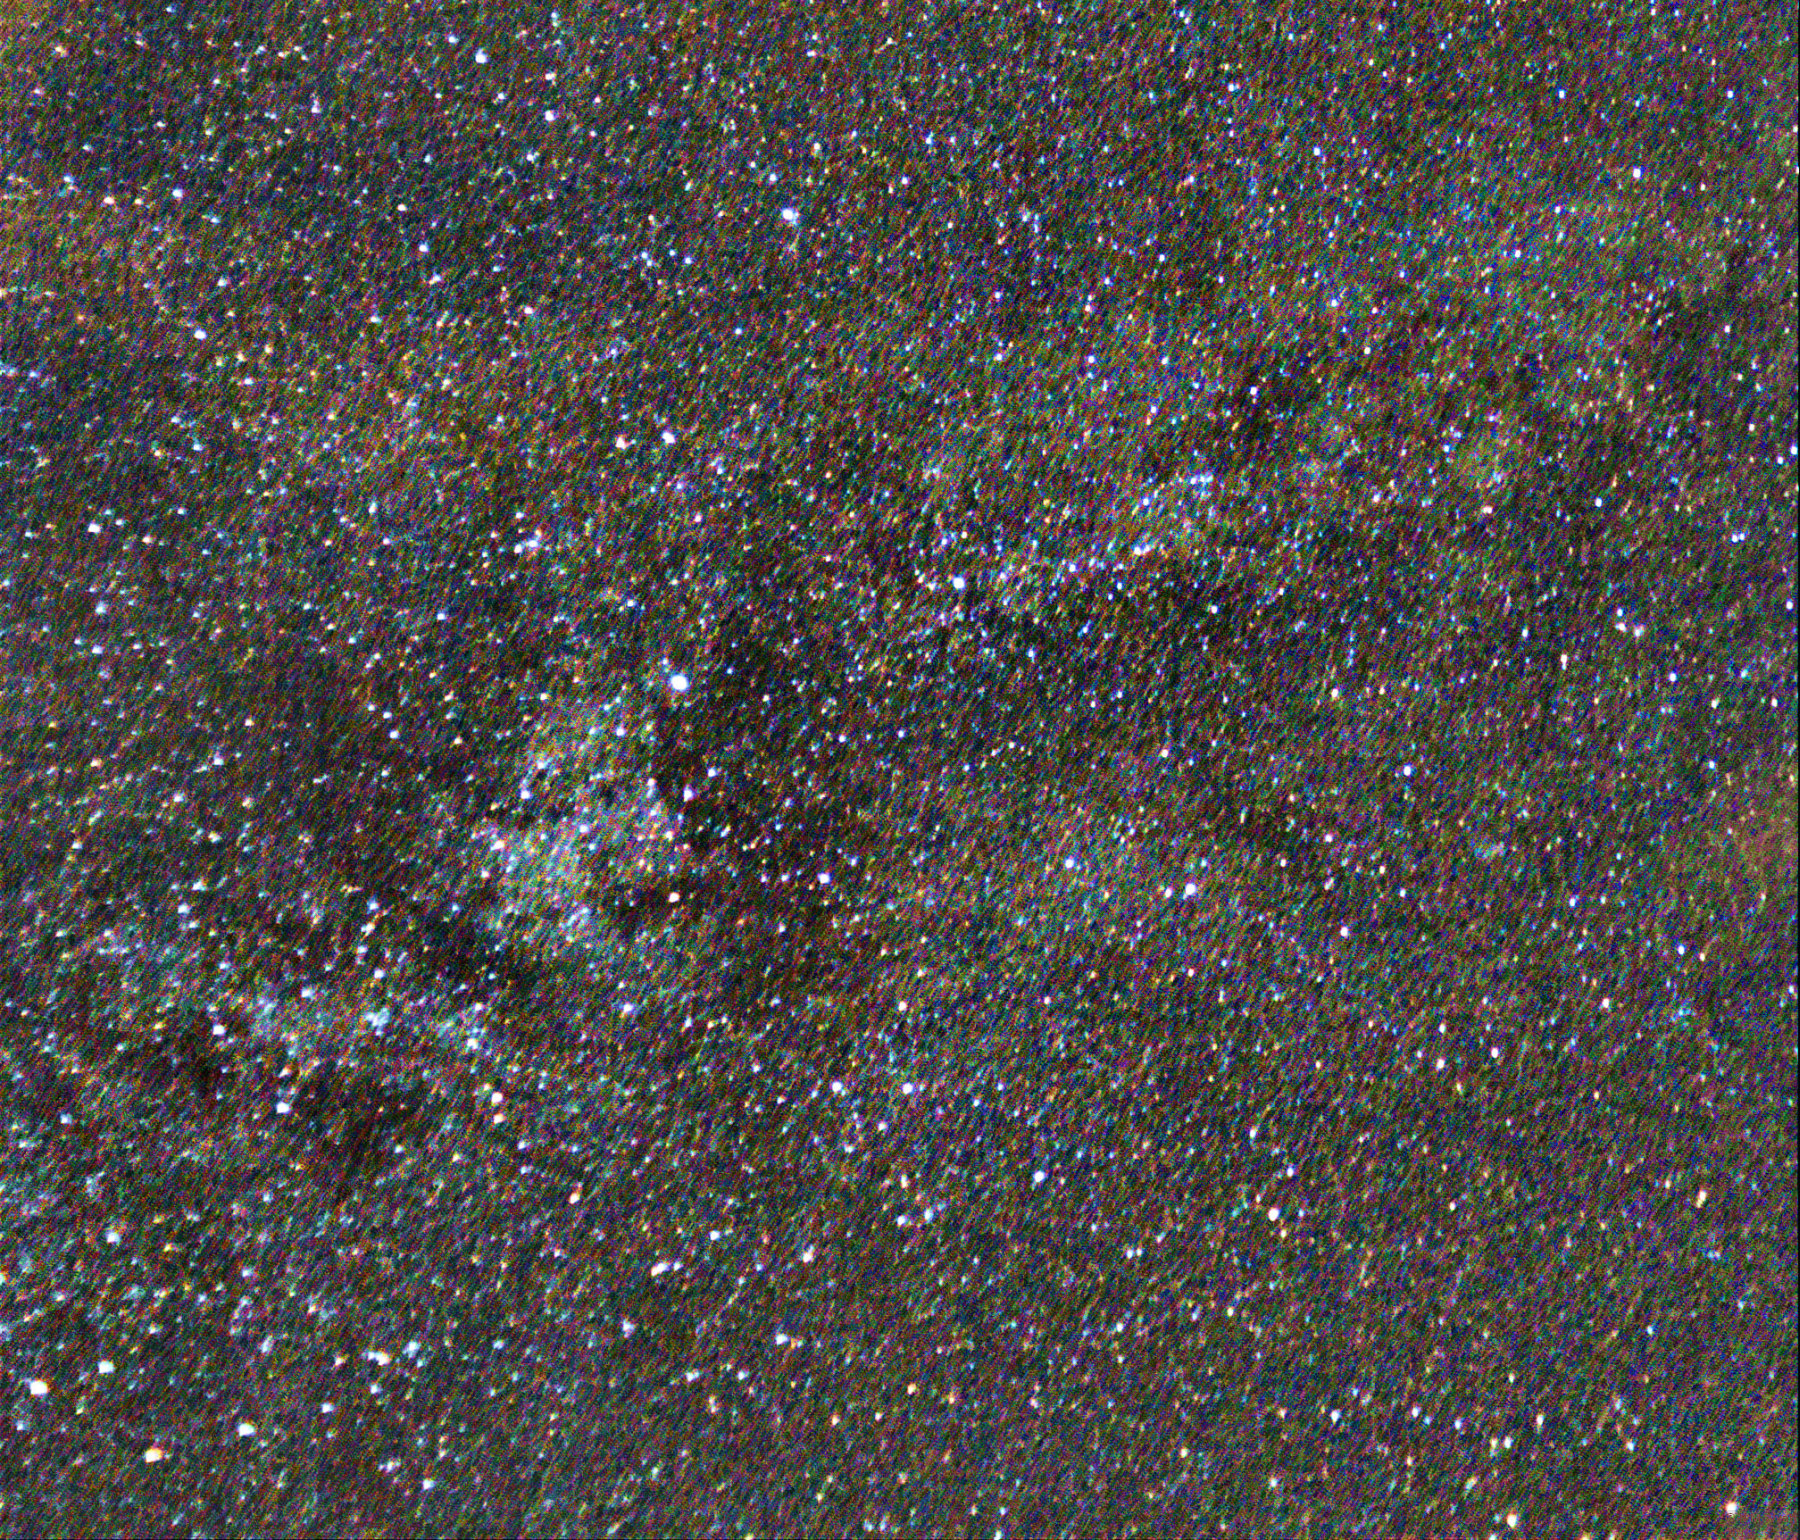 The Milky Way near Cygnus